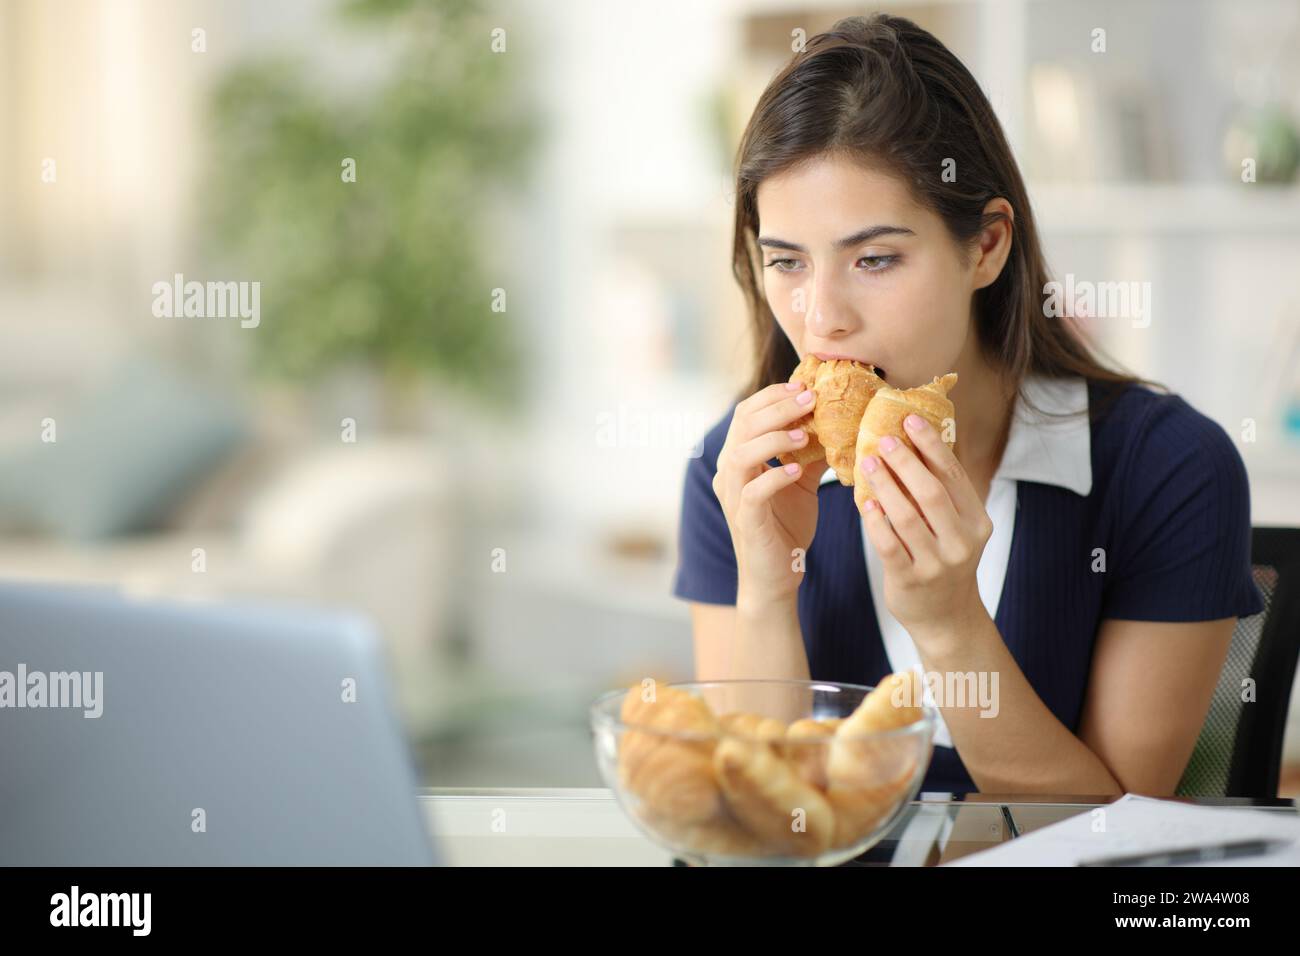 Découragé femme anxieuse mangeant la boulangerie essayant de soulager l'anxiété à la maison Banque D'Images